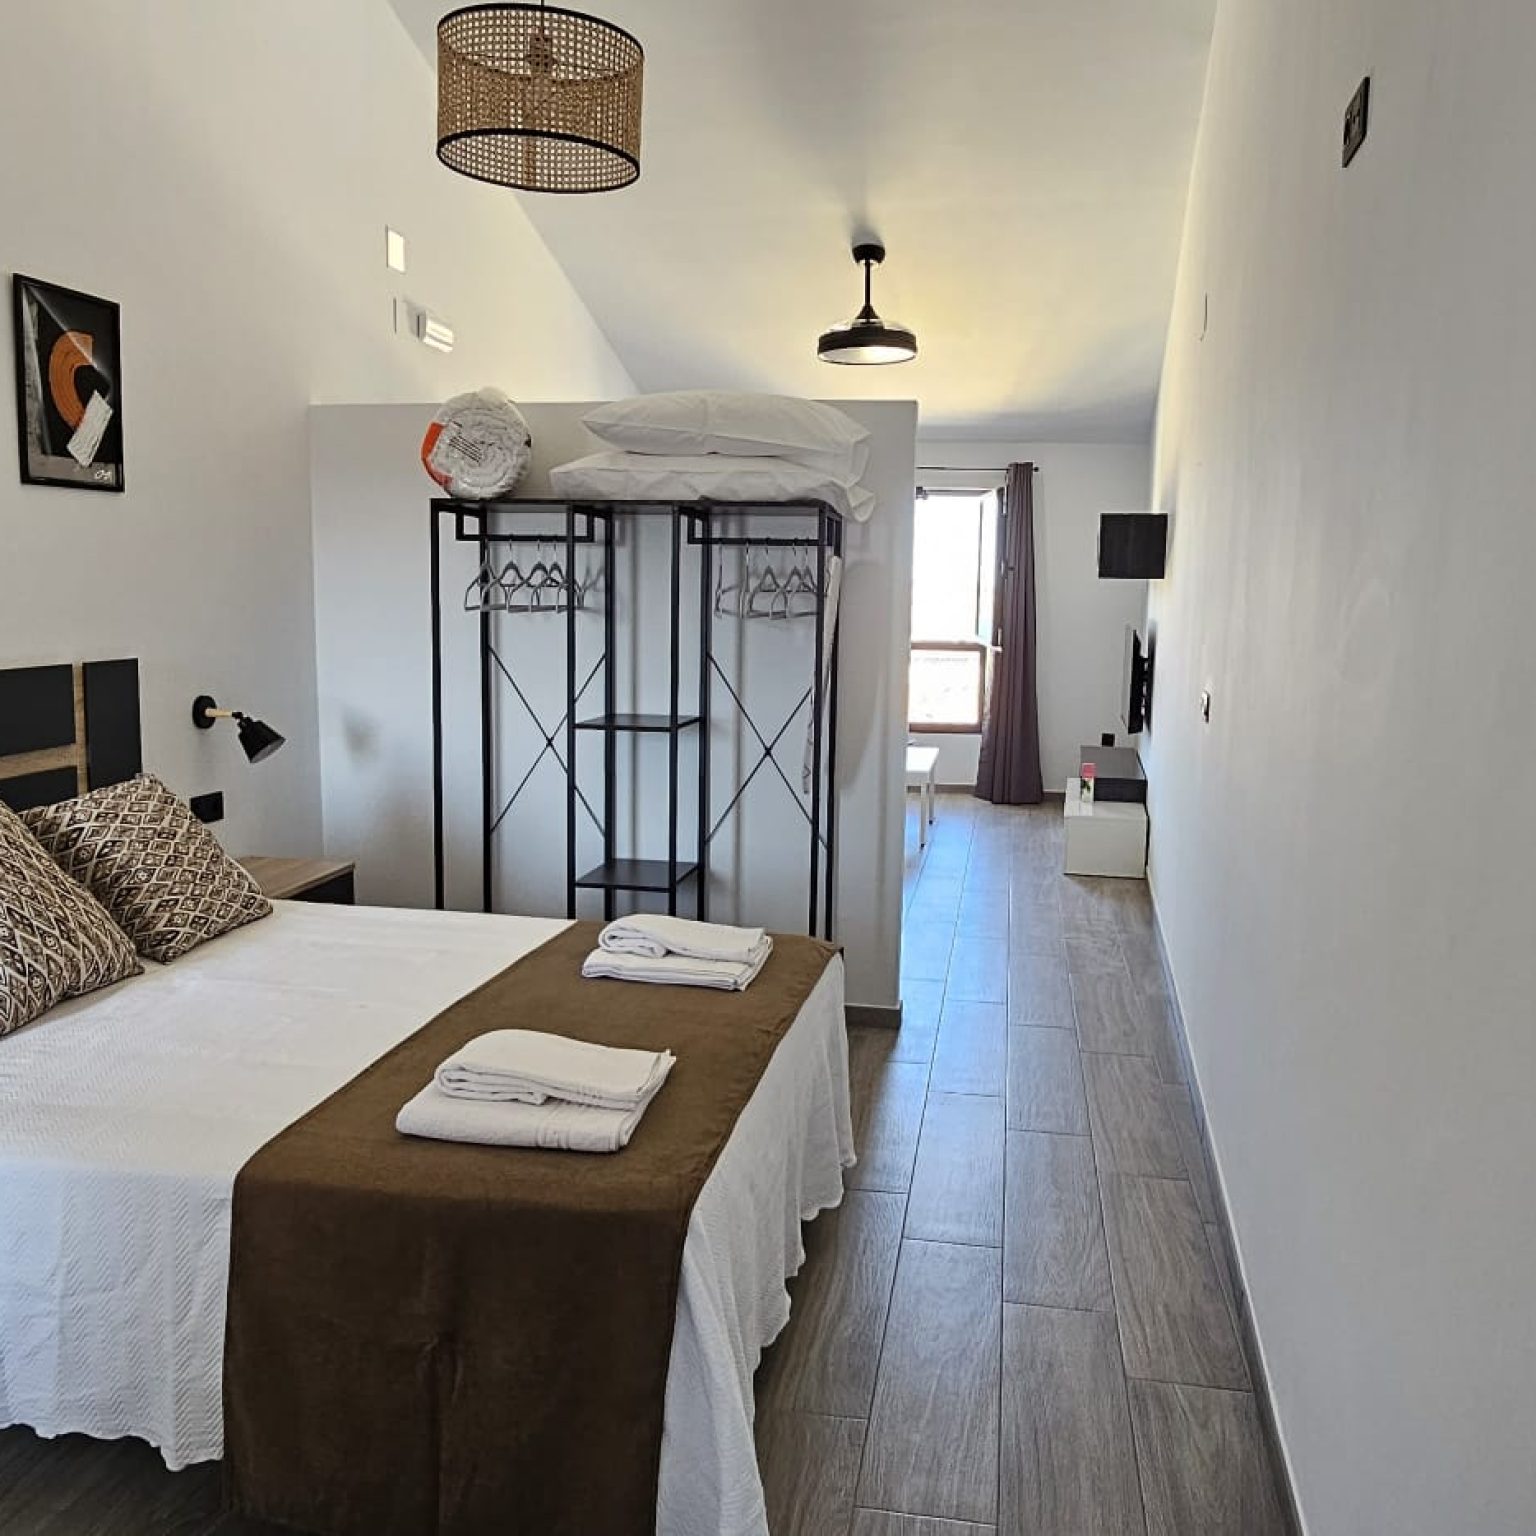 Alojarse a buen precio en Cáceres Apartamentos turisticos Alojamientos en Arroyo de la Luz Cáceres El Mirador de las Golondrinas